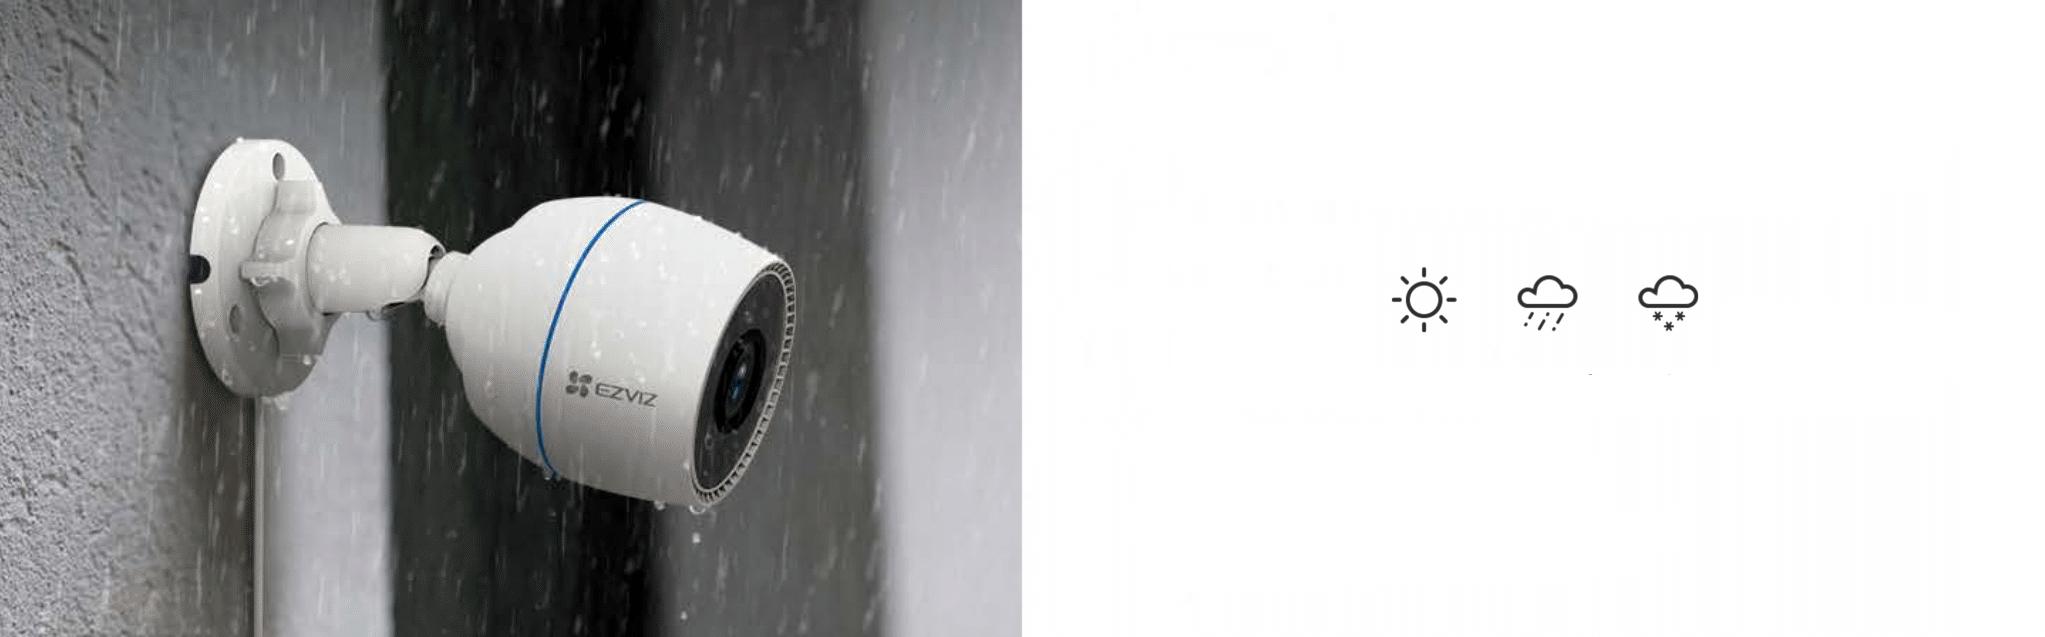 Kamera IP EZVIZ H3c 2MPx to synonim stałej ochrony nawet w bardzo trudnych warunkach pogodowych